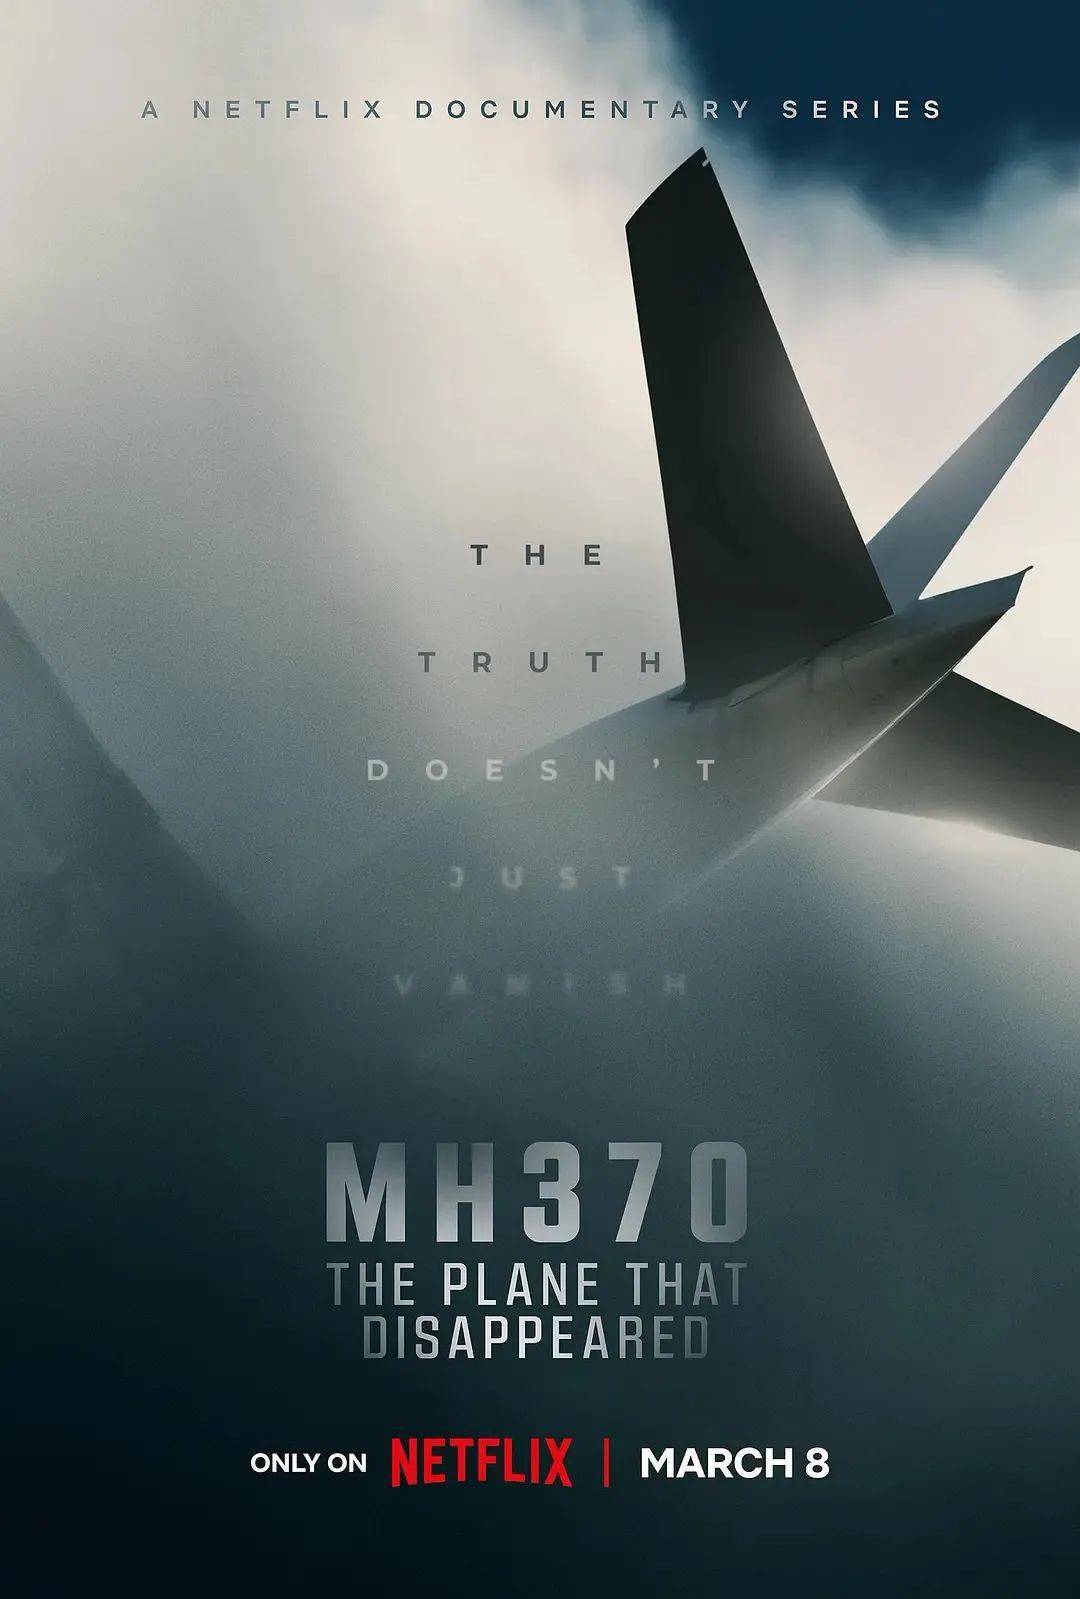 飞机失事海报图片